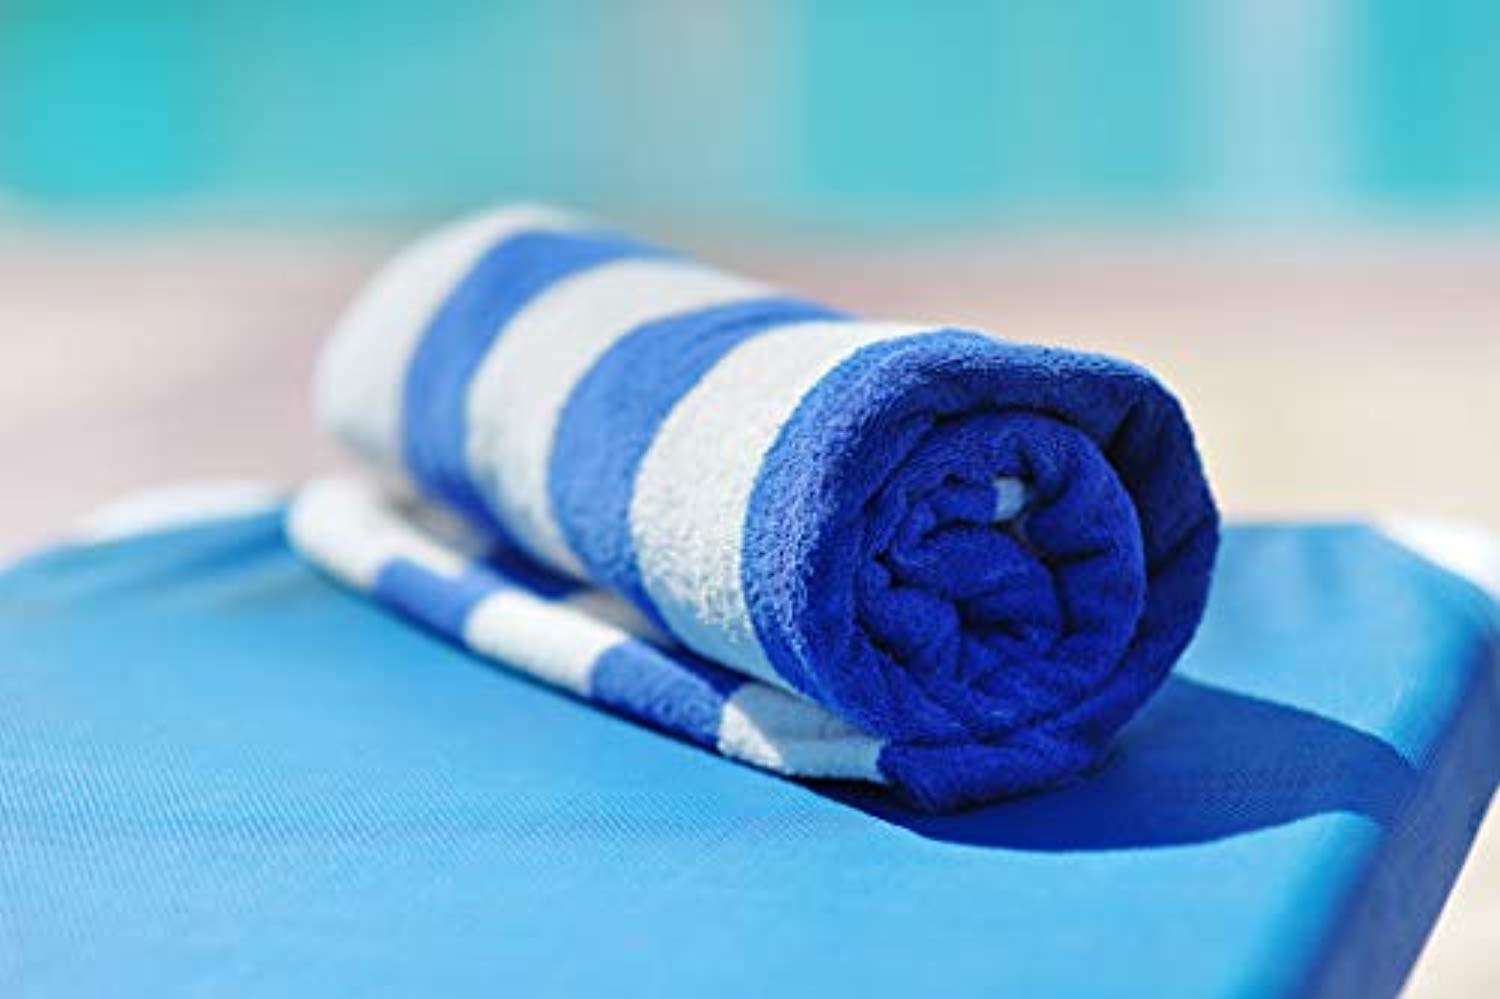 MIMAATEX Pool/Beach Cabana Towel Set - Pack of 4 pieces - 30”x 60